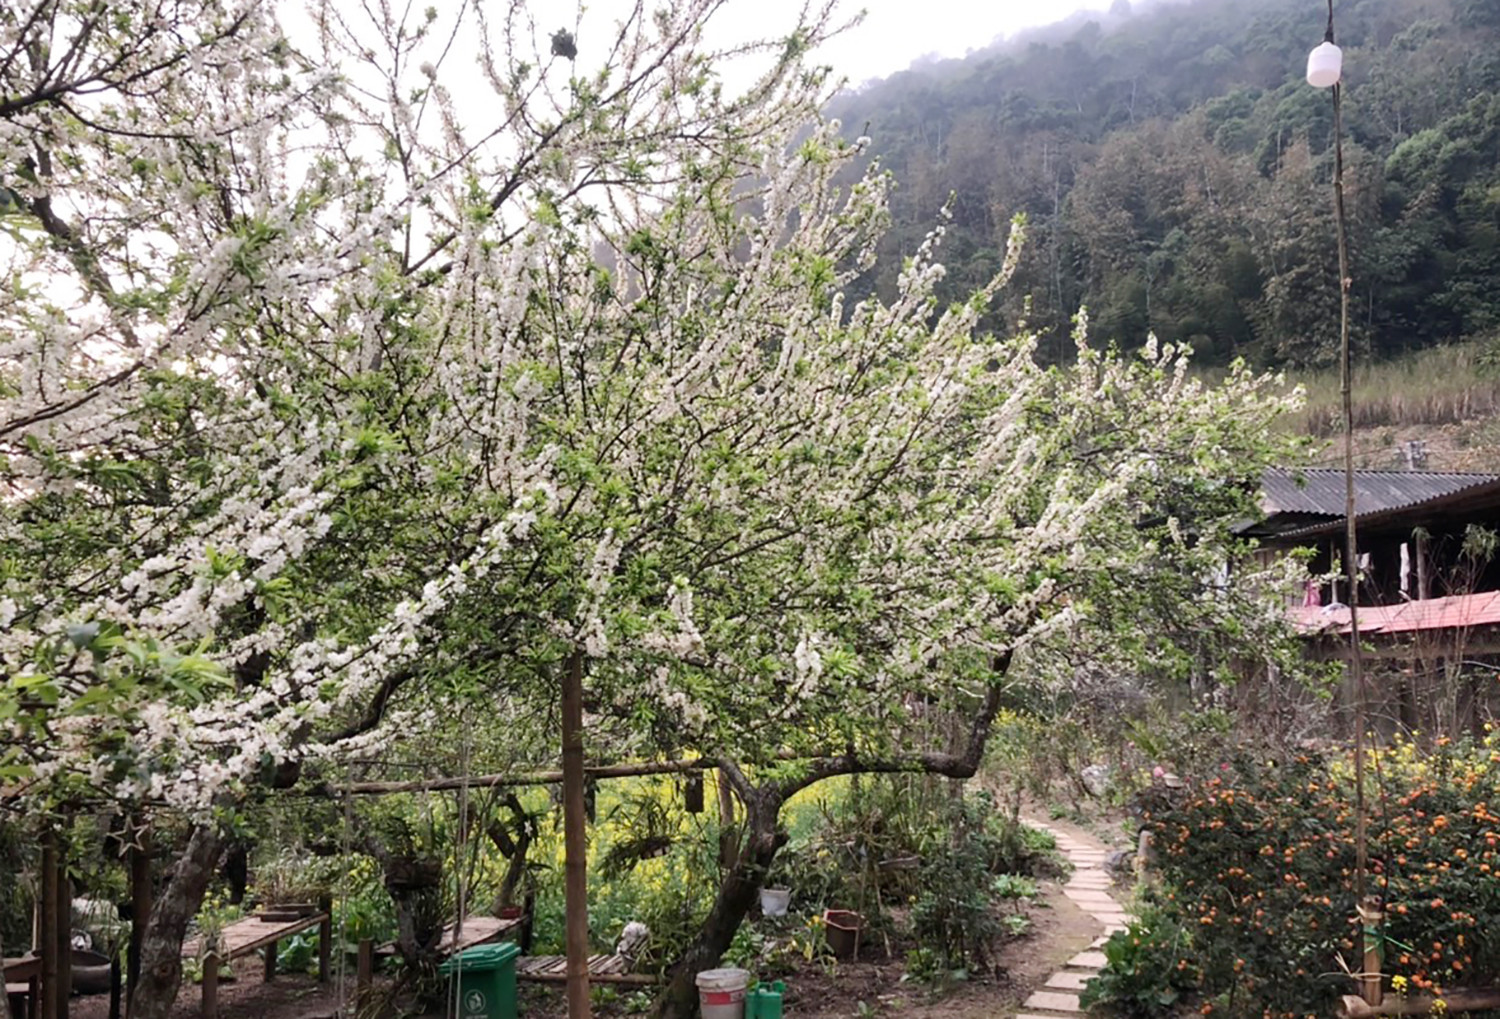 Mùa hoa mận nở trắng cổng trời Mường Lống, cảnh đẹp như 'tiểu Sa Pa ở Nghệ An' - 8